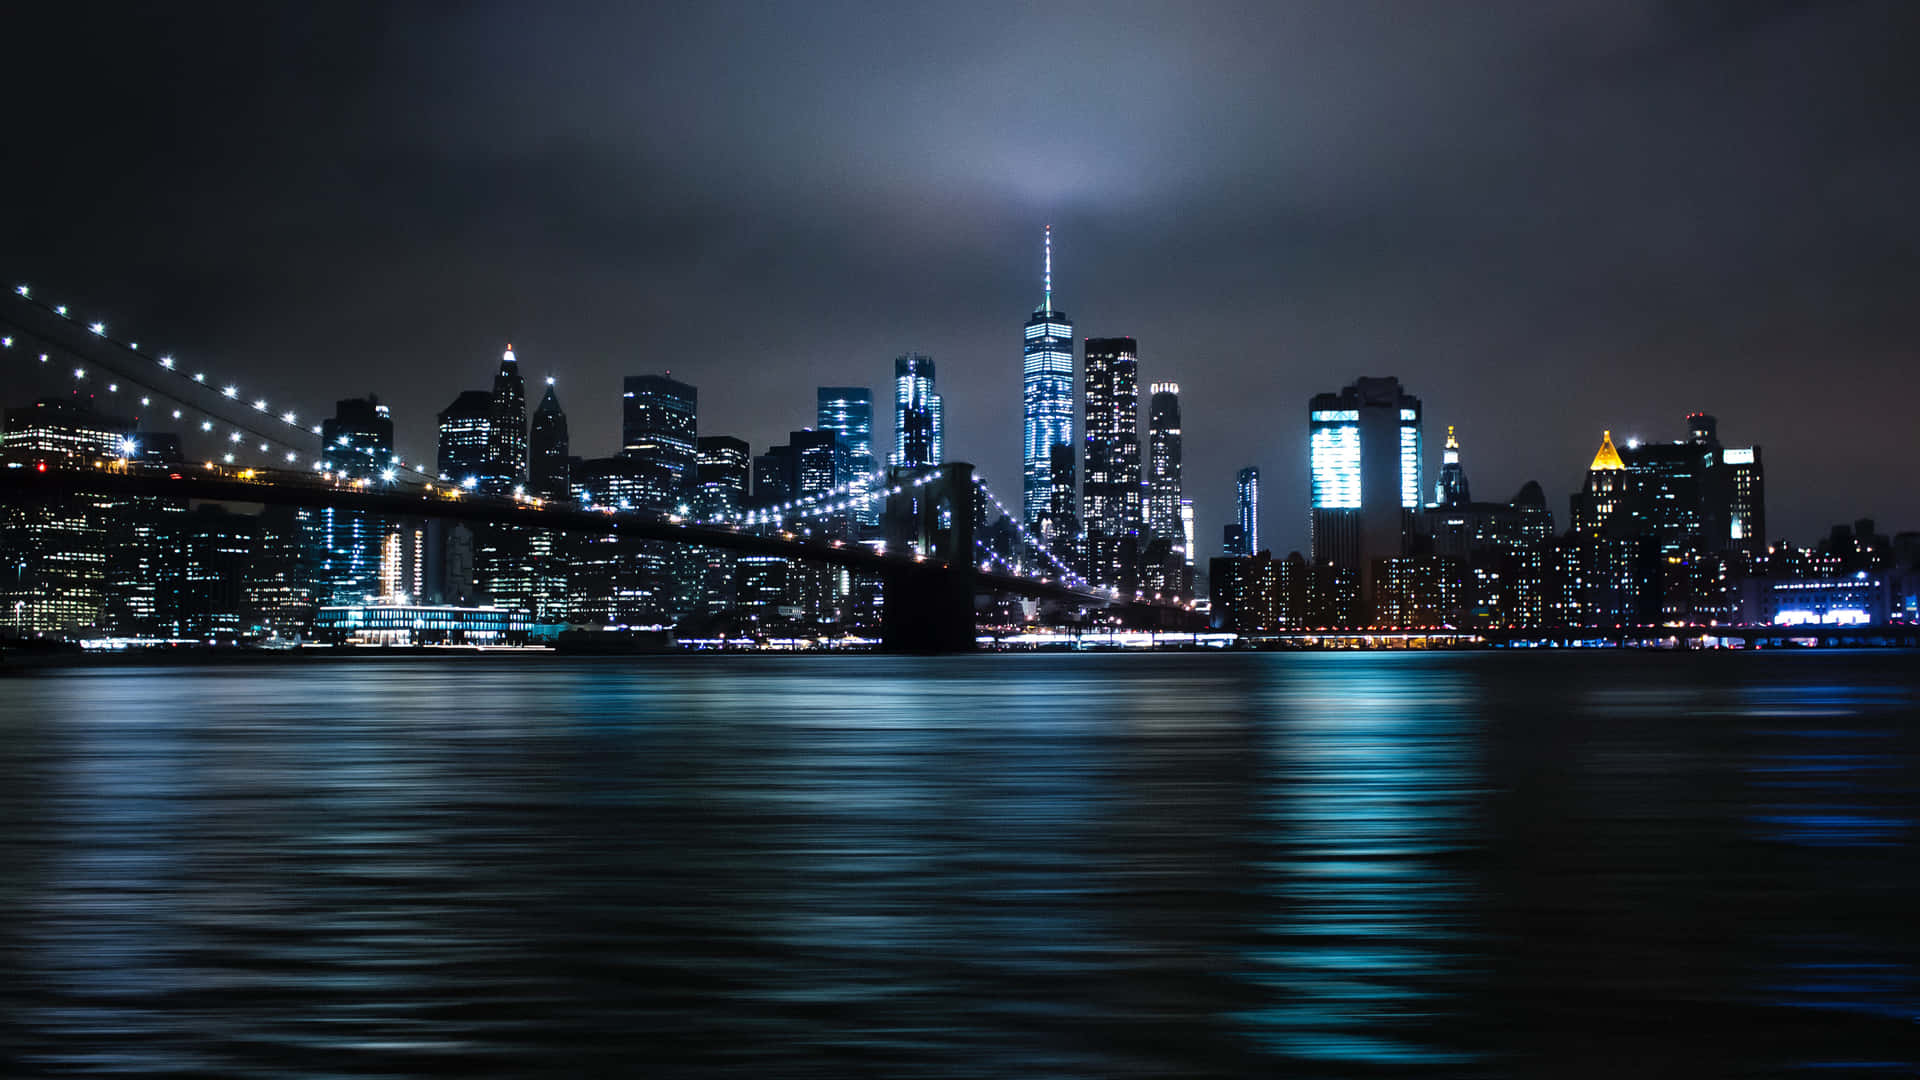 Imágenesde La Ciudad De Brooklyn De Noche.